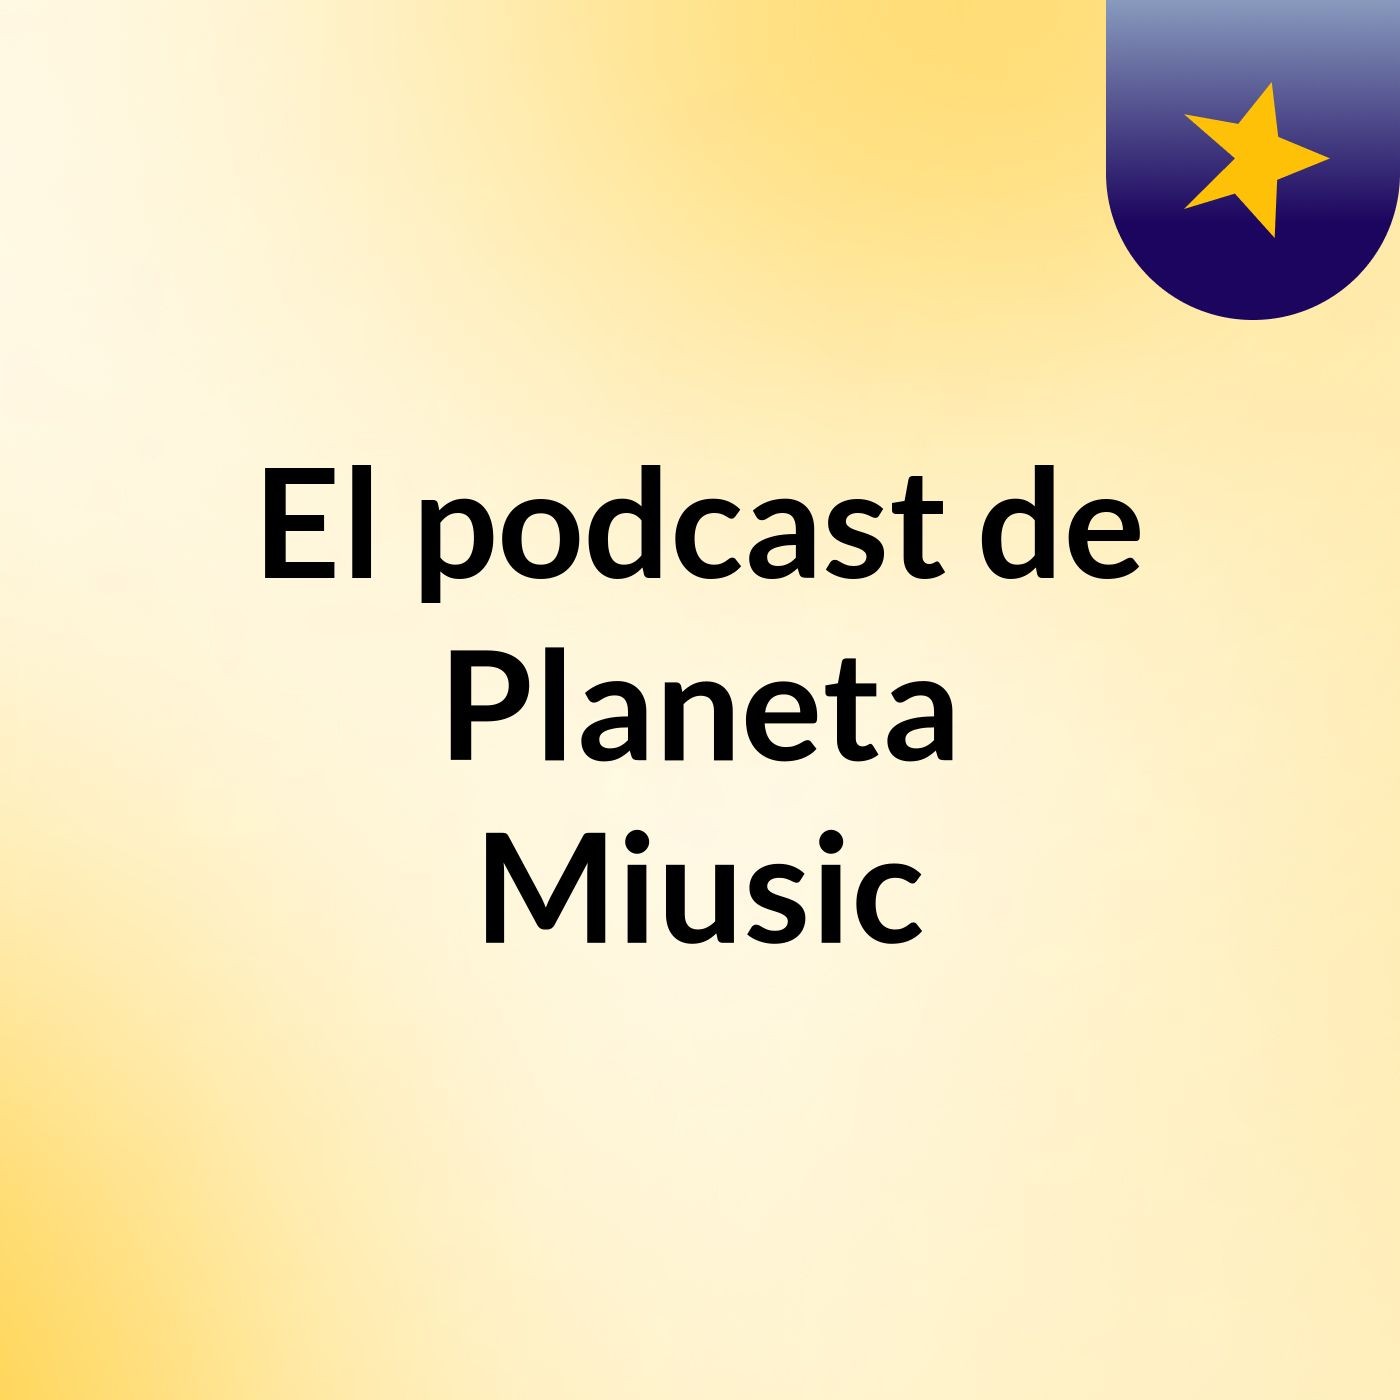 Episodio 2 - El podcast de Planeta Miusic